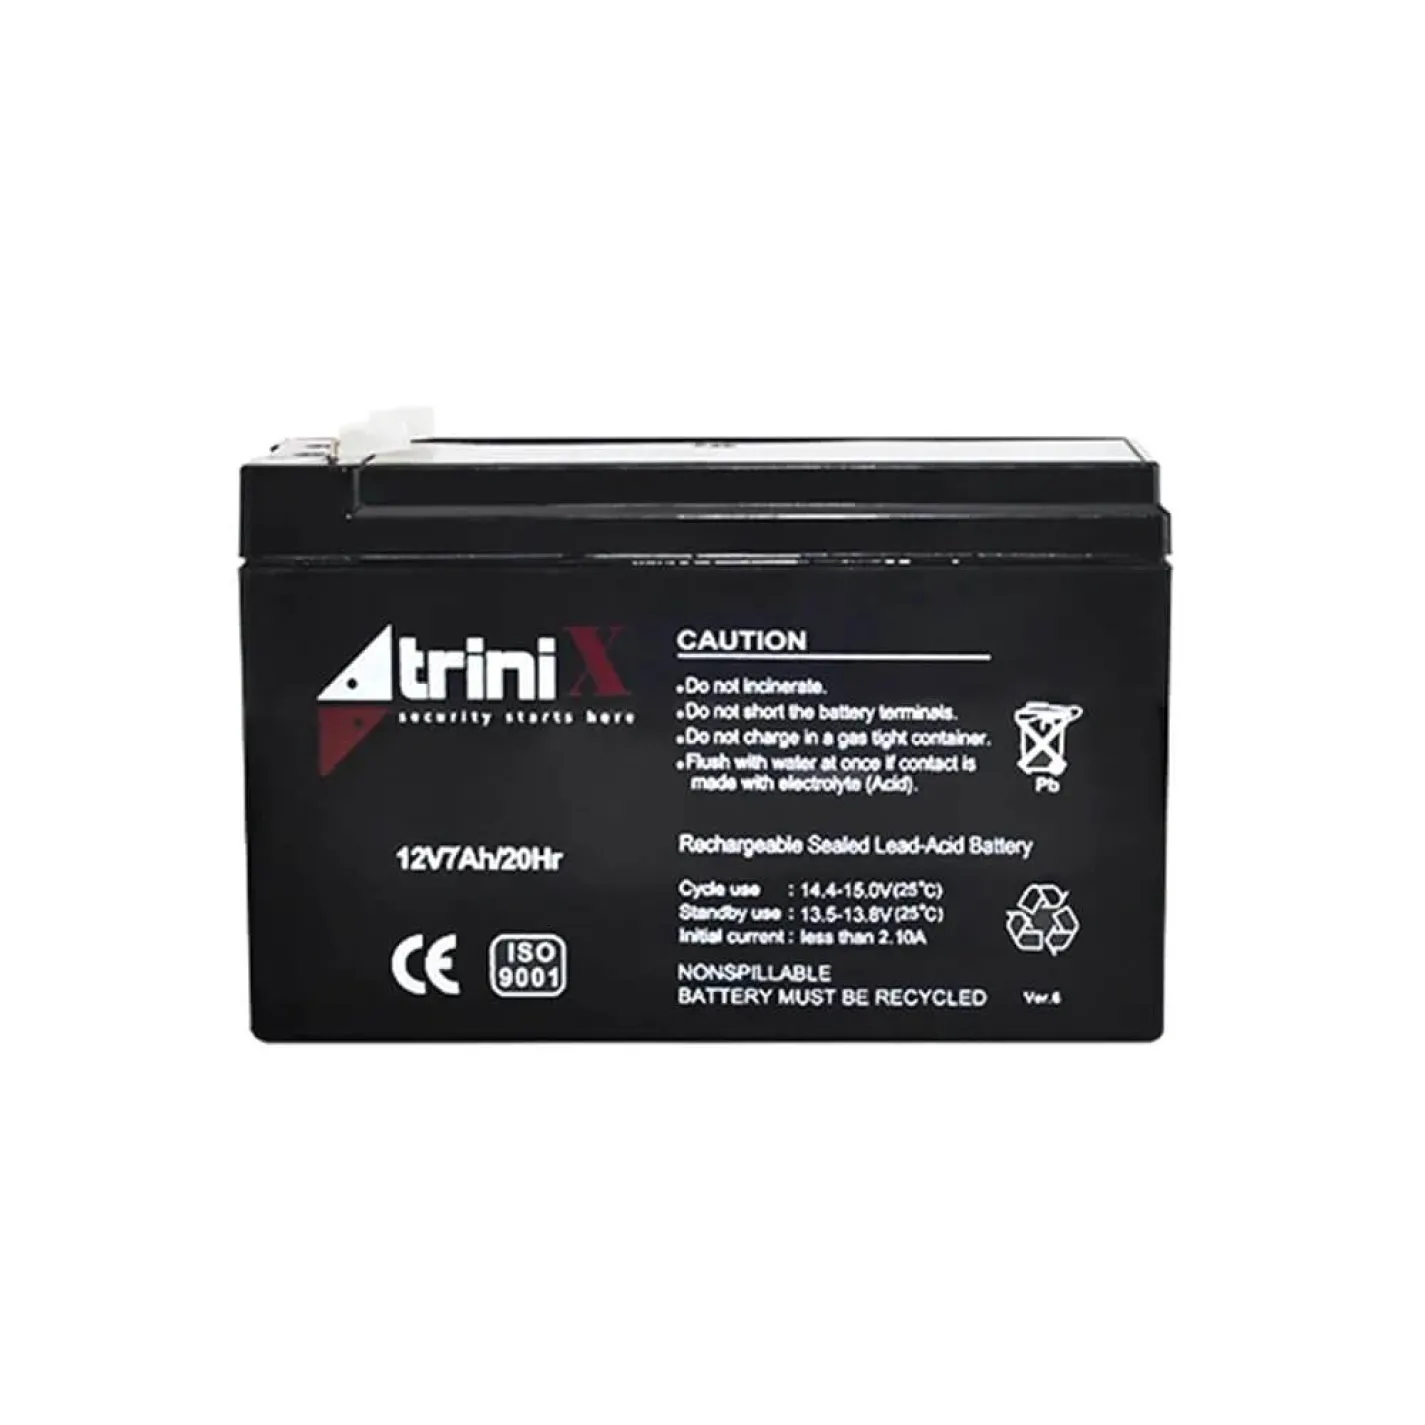 Акумуляторна батарея свинцево-кислотна Trinix 12В 7Аг 12V7Ah/20Hr AGM - Фото 1